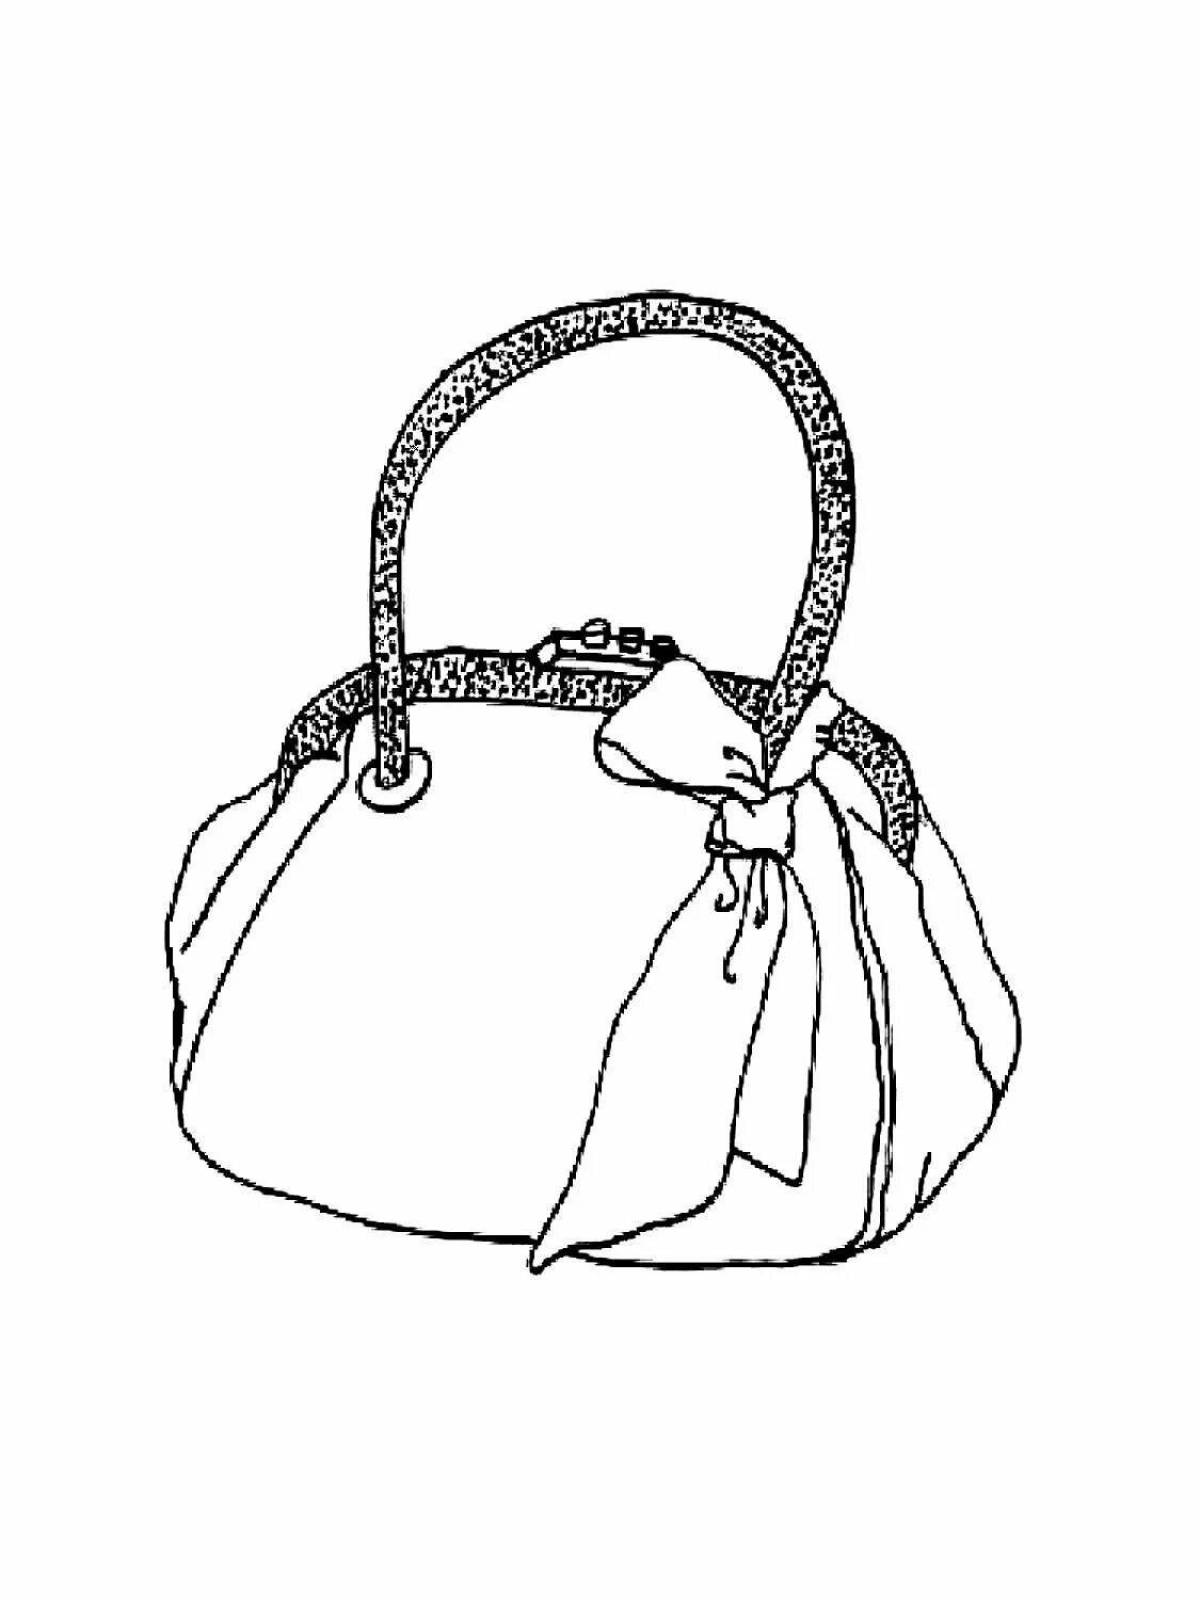 Coloring page elegant handbag for girls